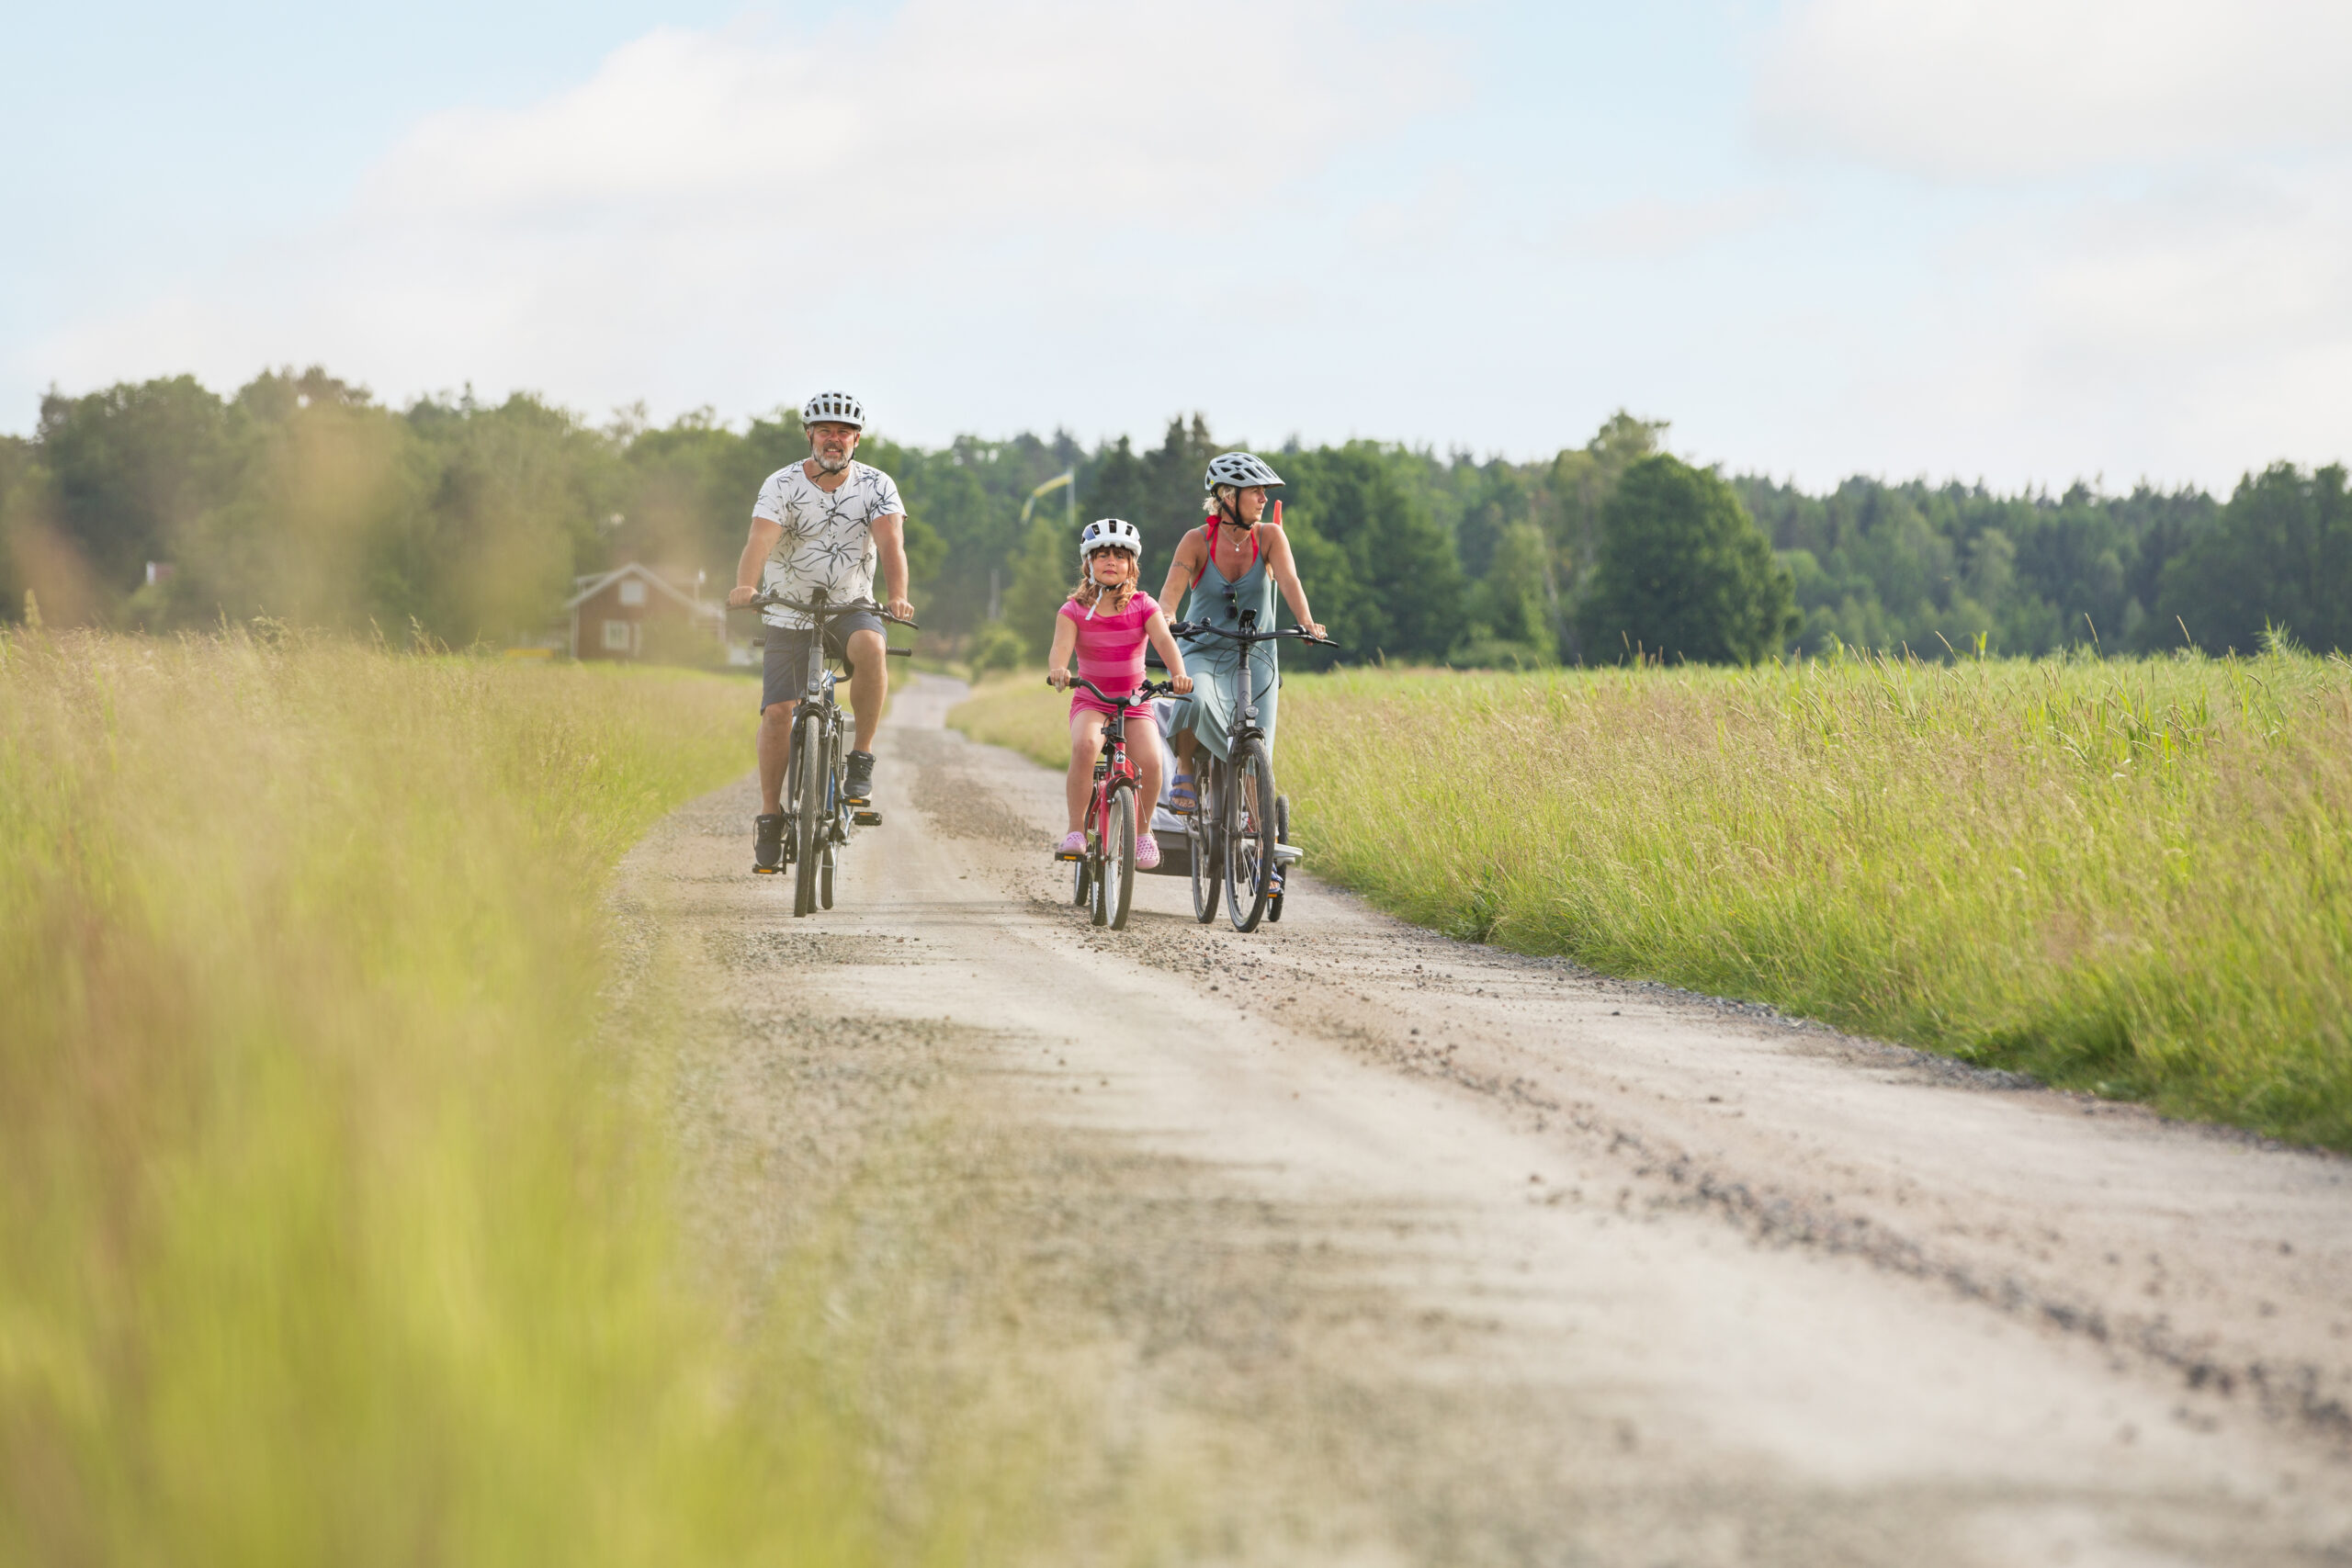 En familj med pappa, mamma och liten flicka cyklar på en grusväg omgiven av öppna fält.